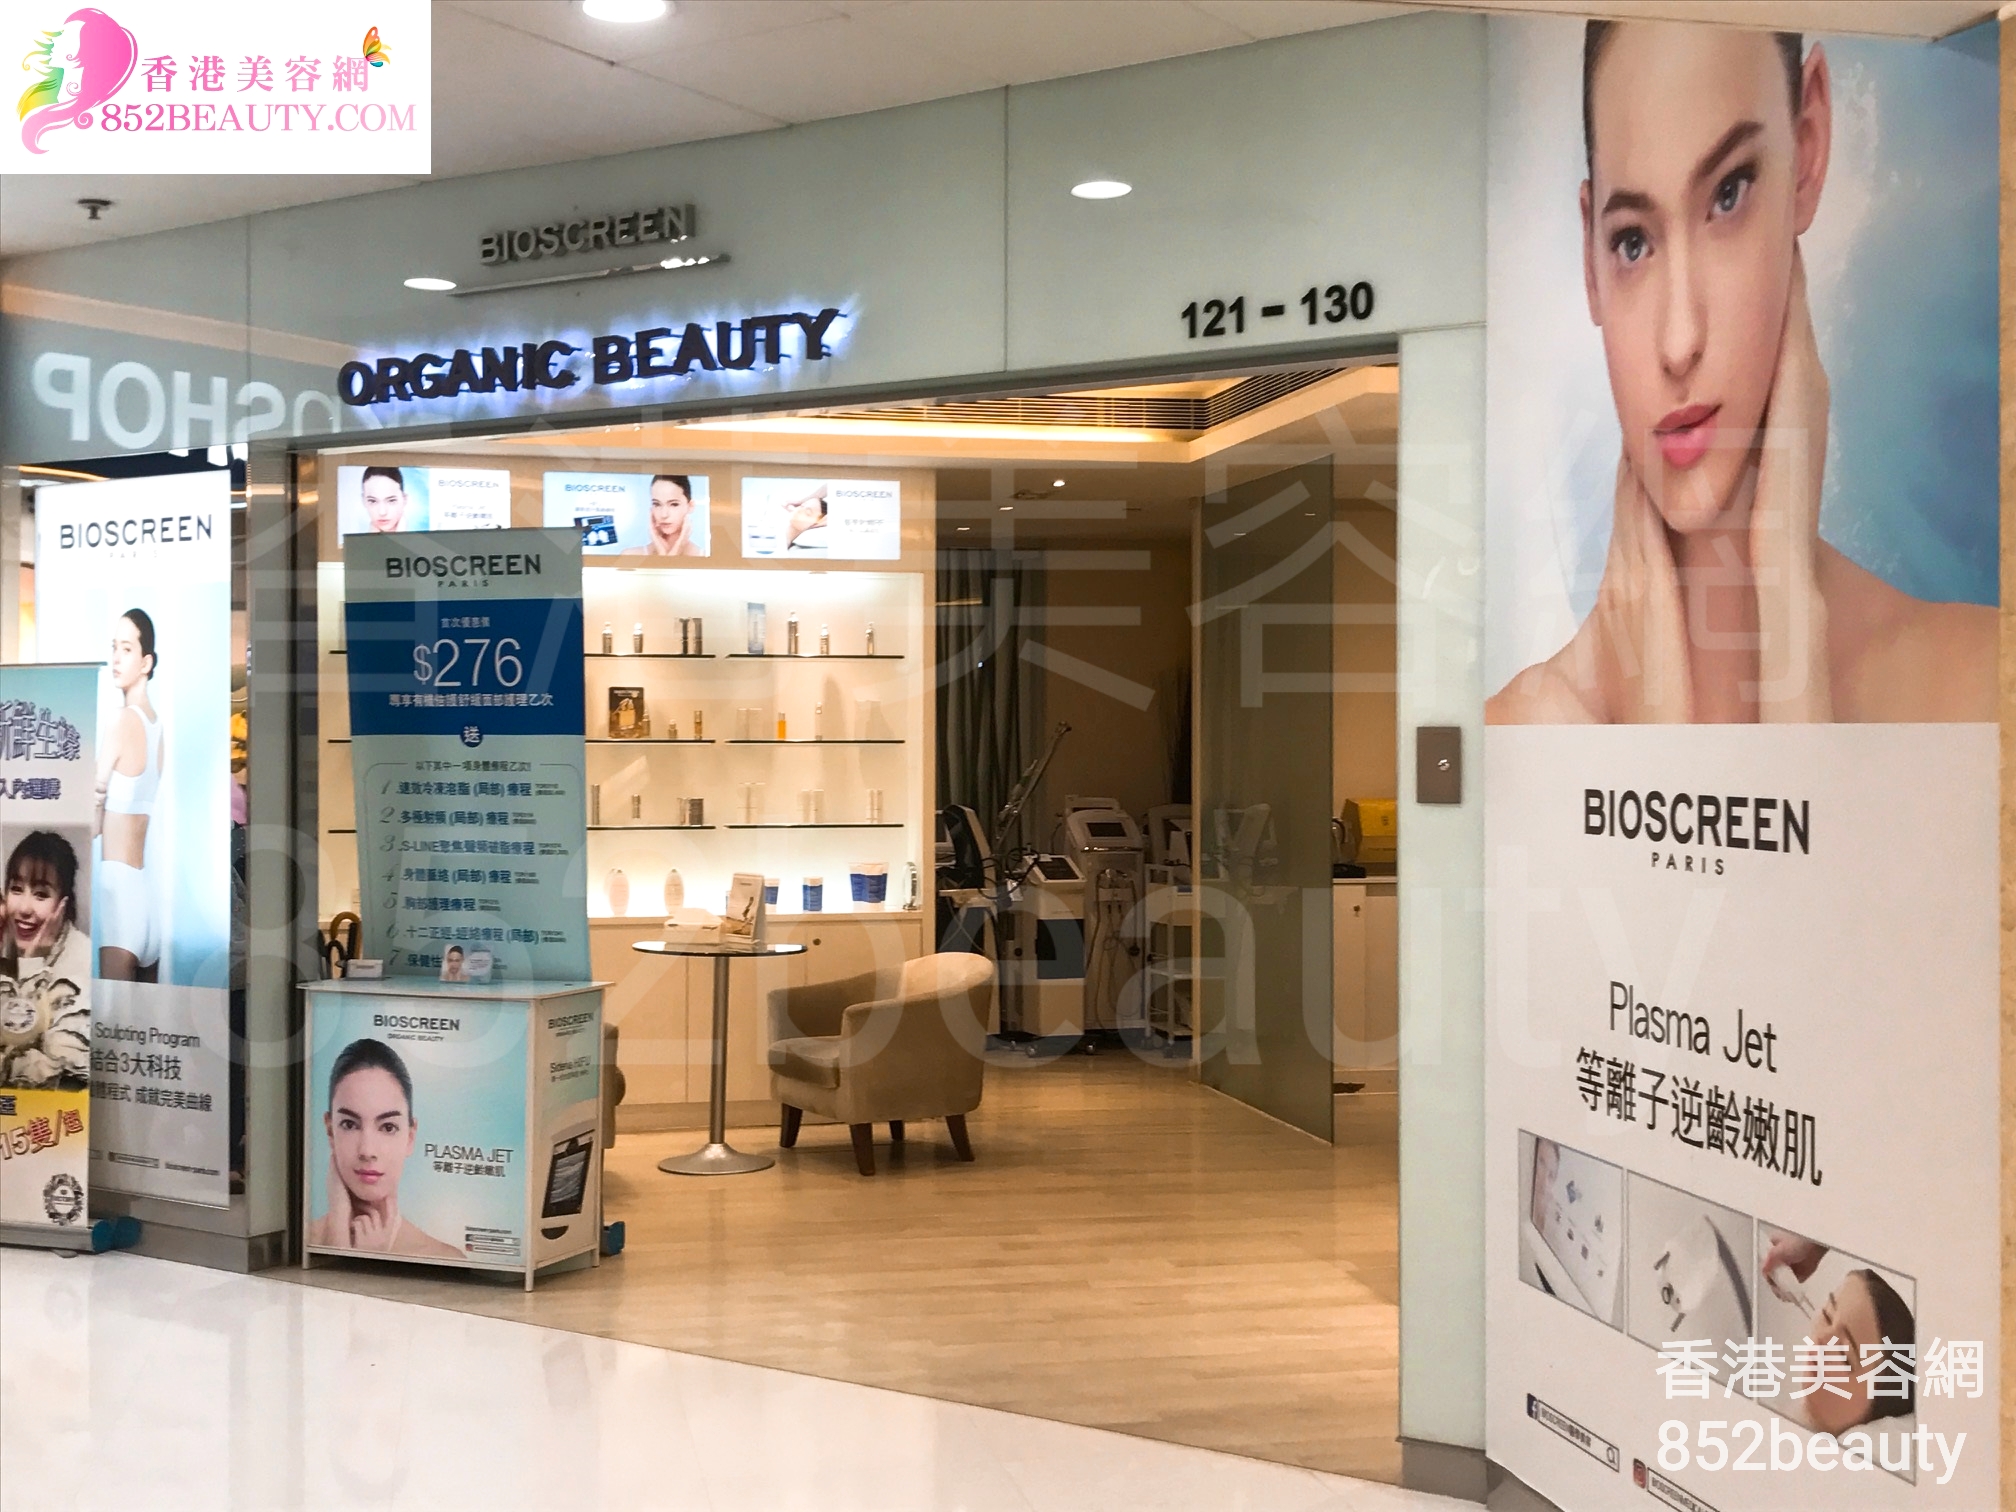 香港美容網 Hong Kong Beauty Salon 美容院 / 美容師: Bioscreen Organic Beauty (大埔)